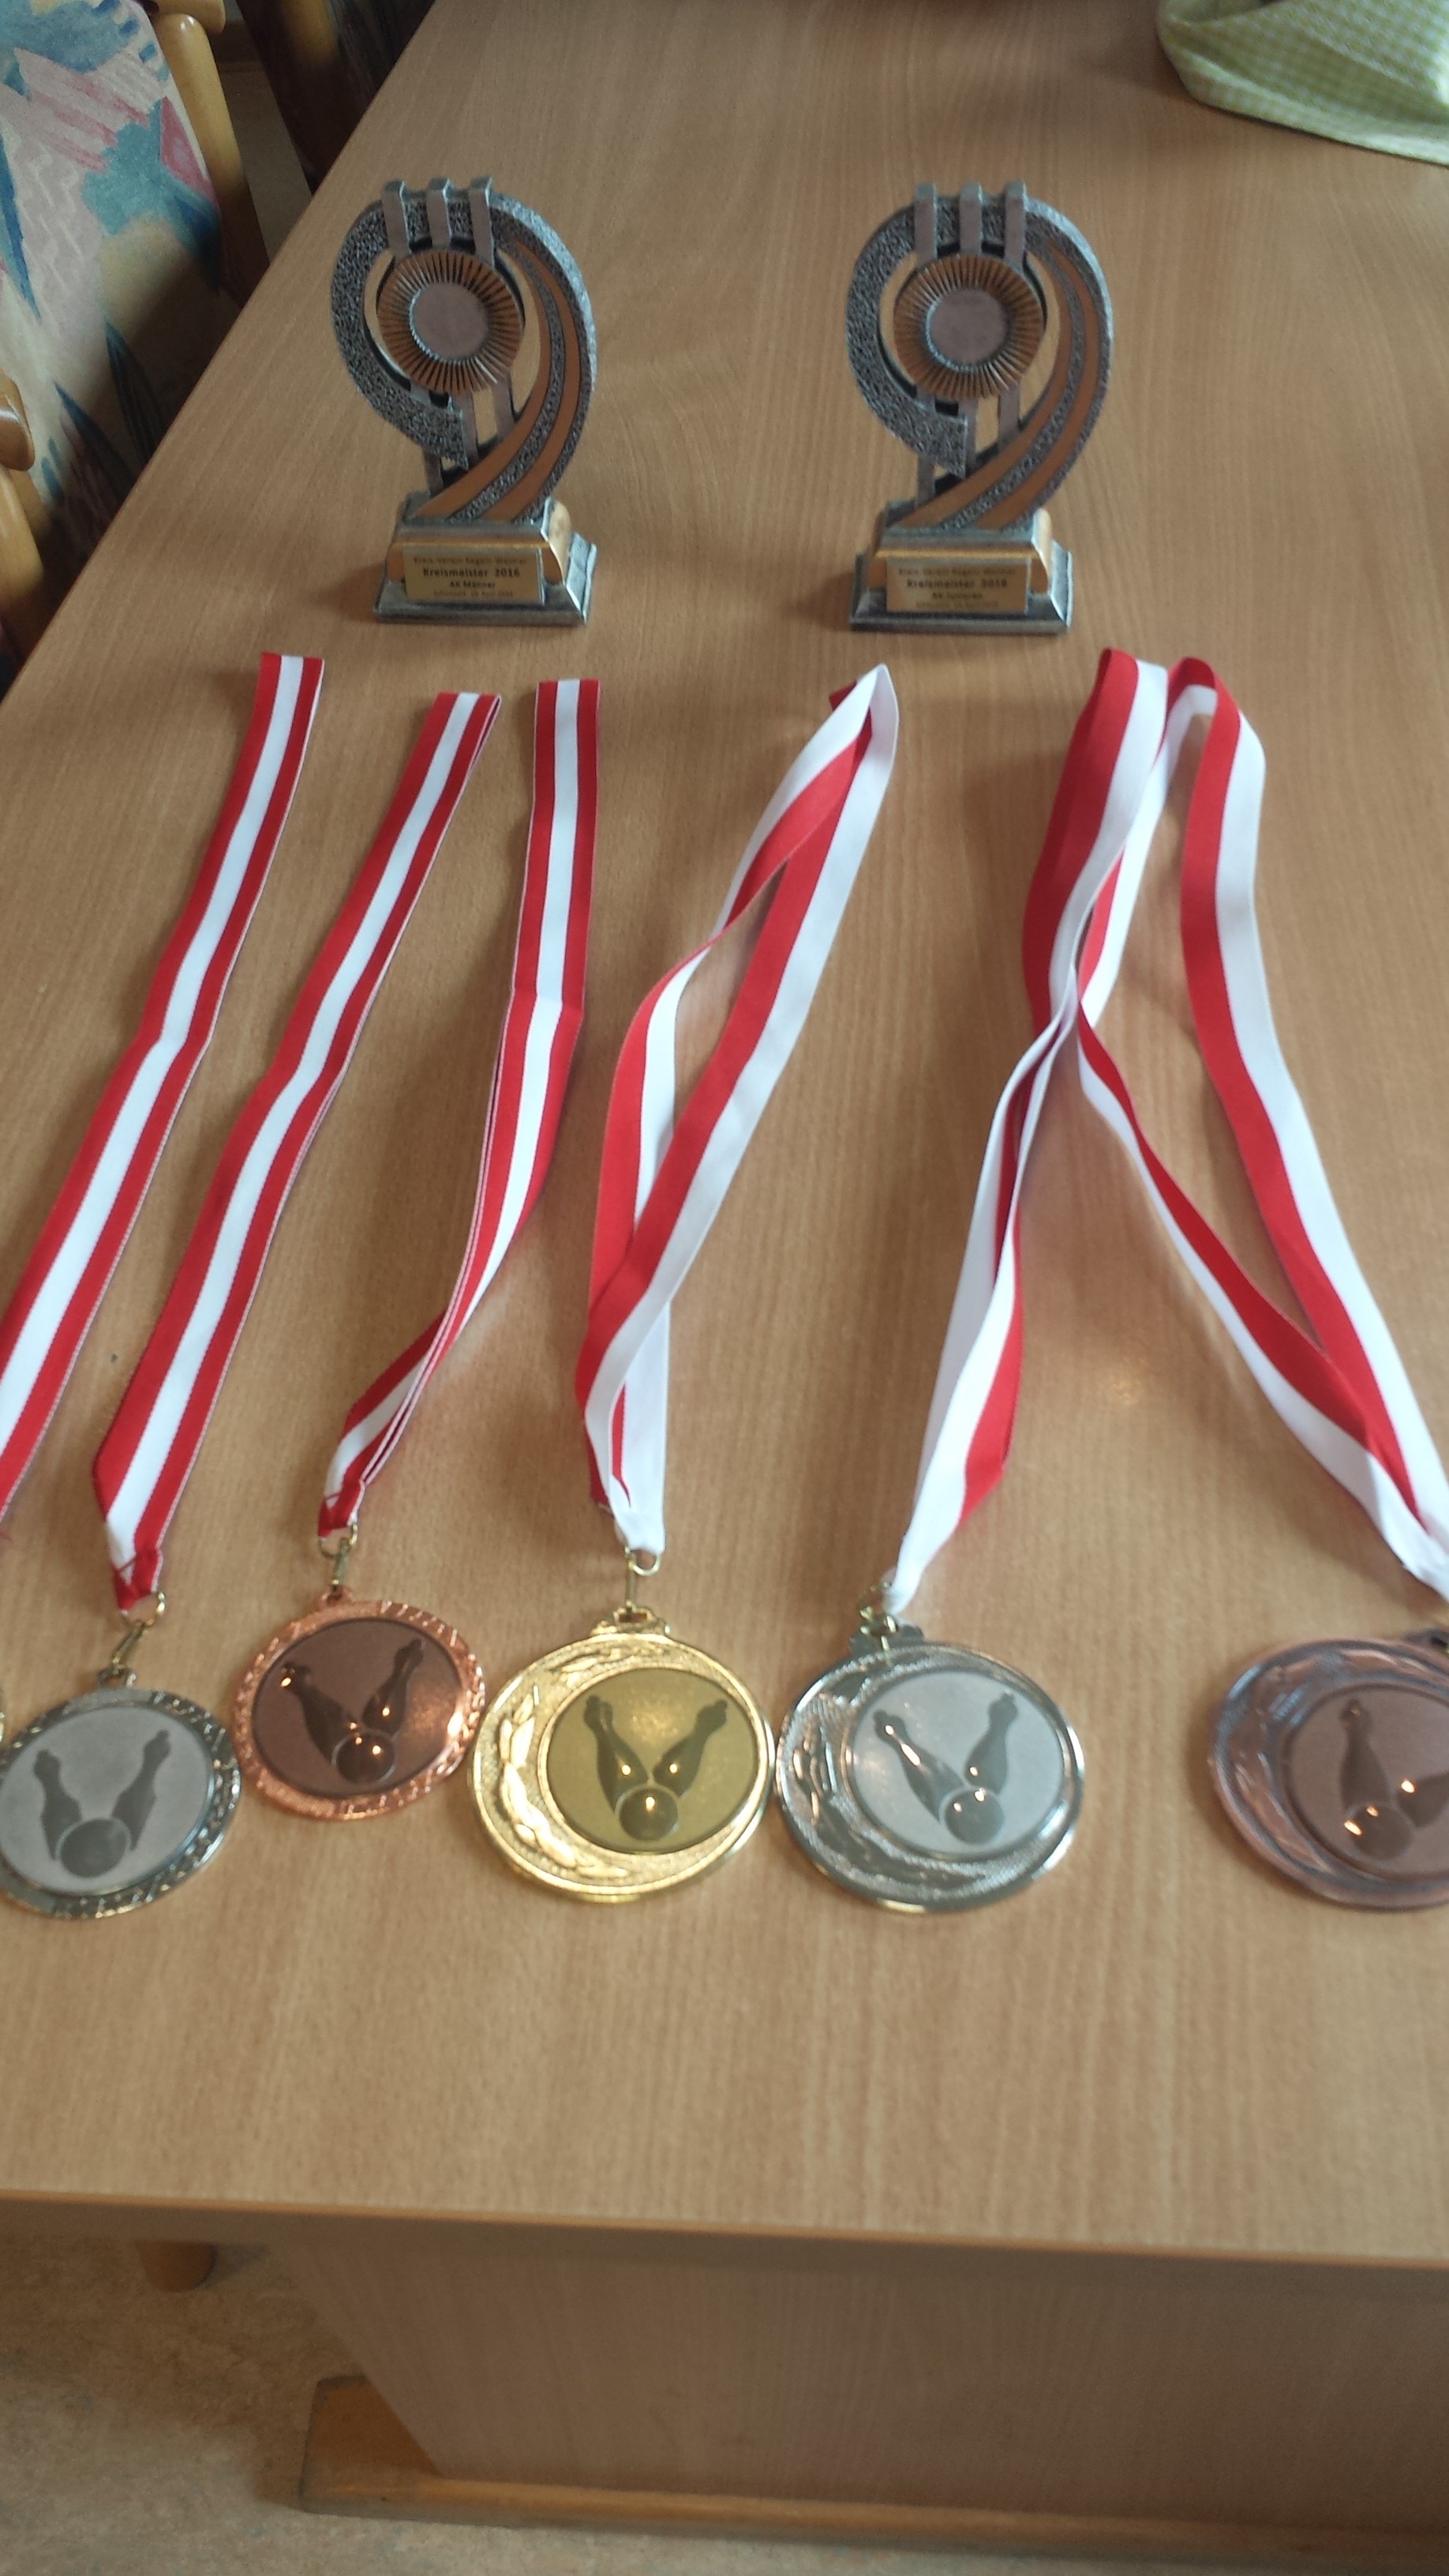 VEM 2016 Medaillen